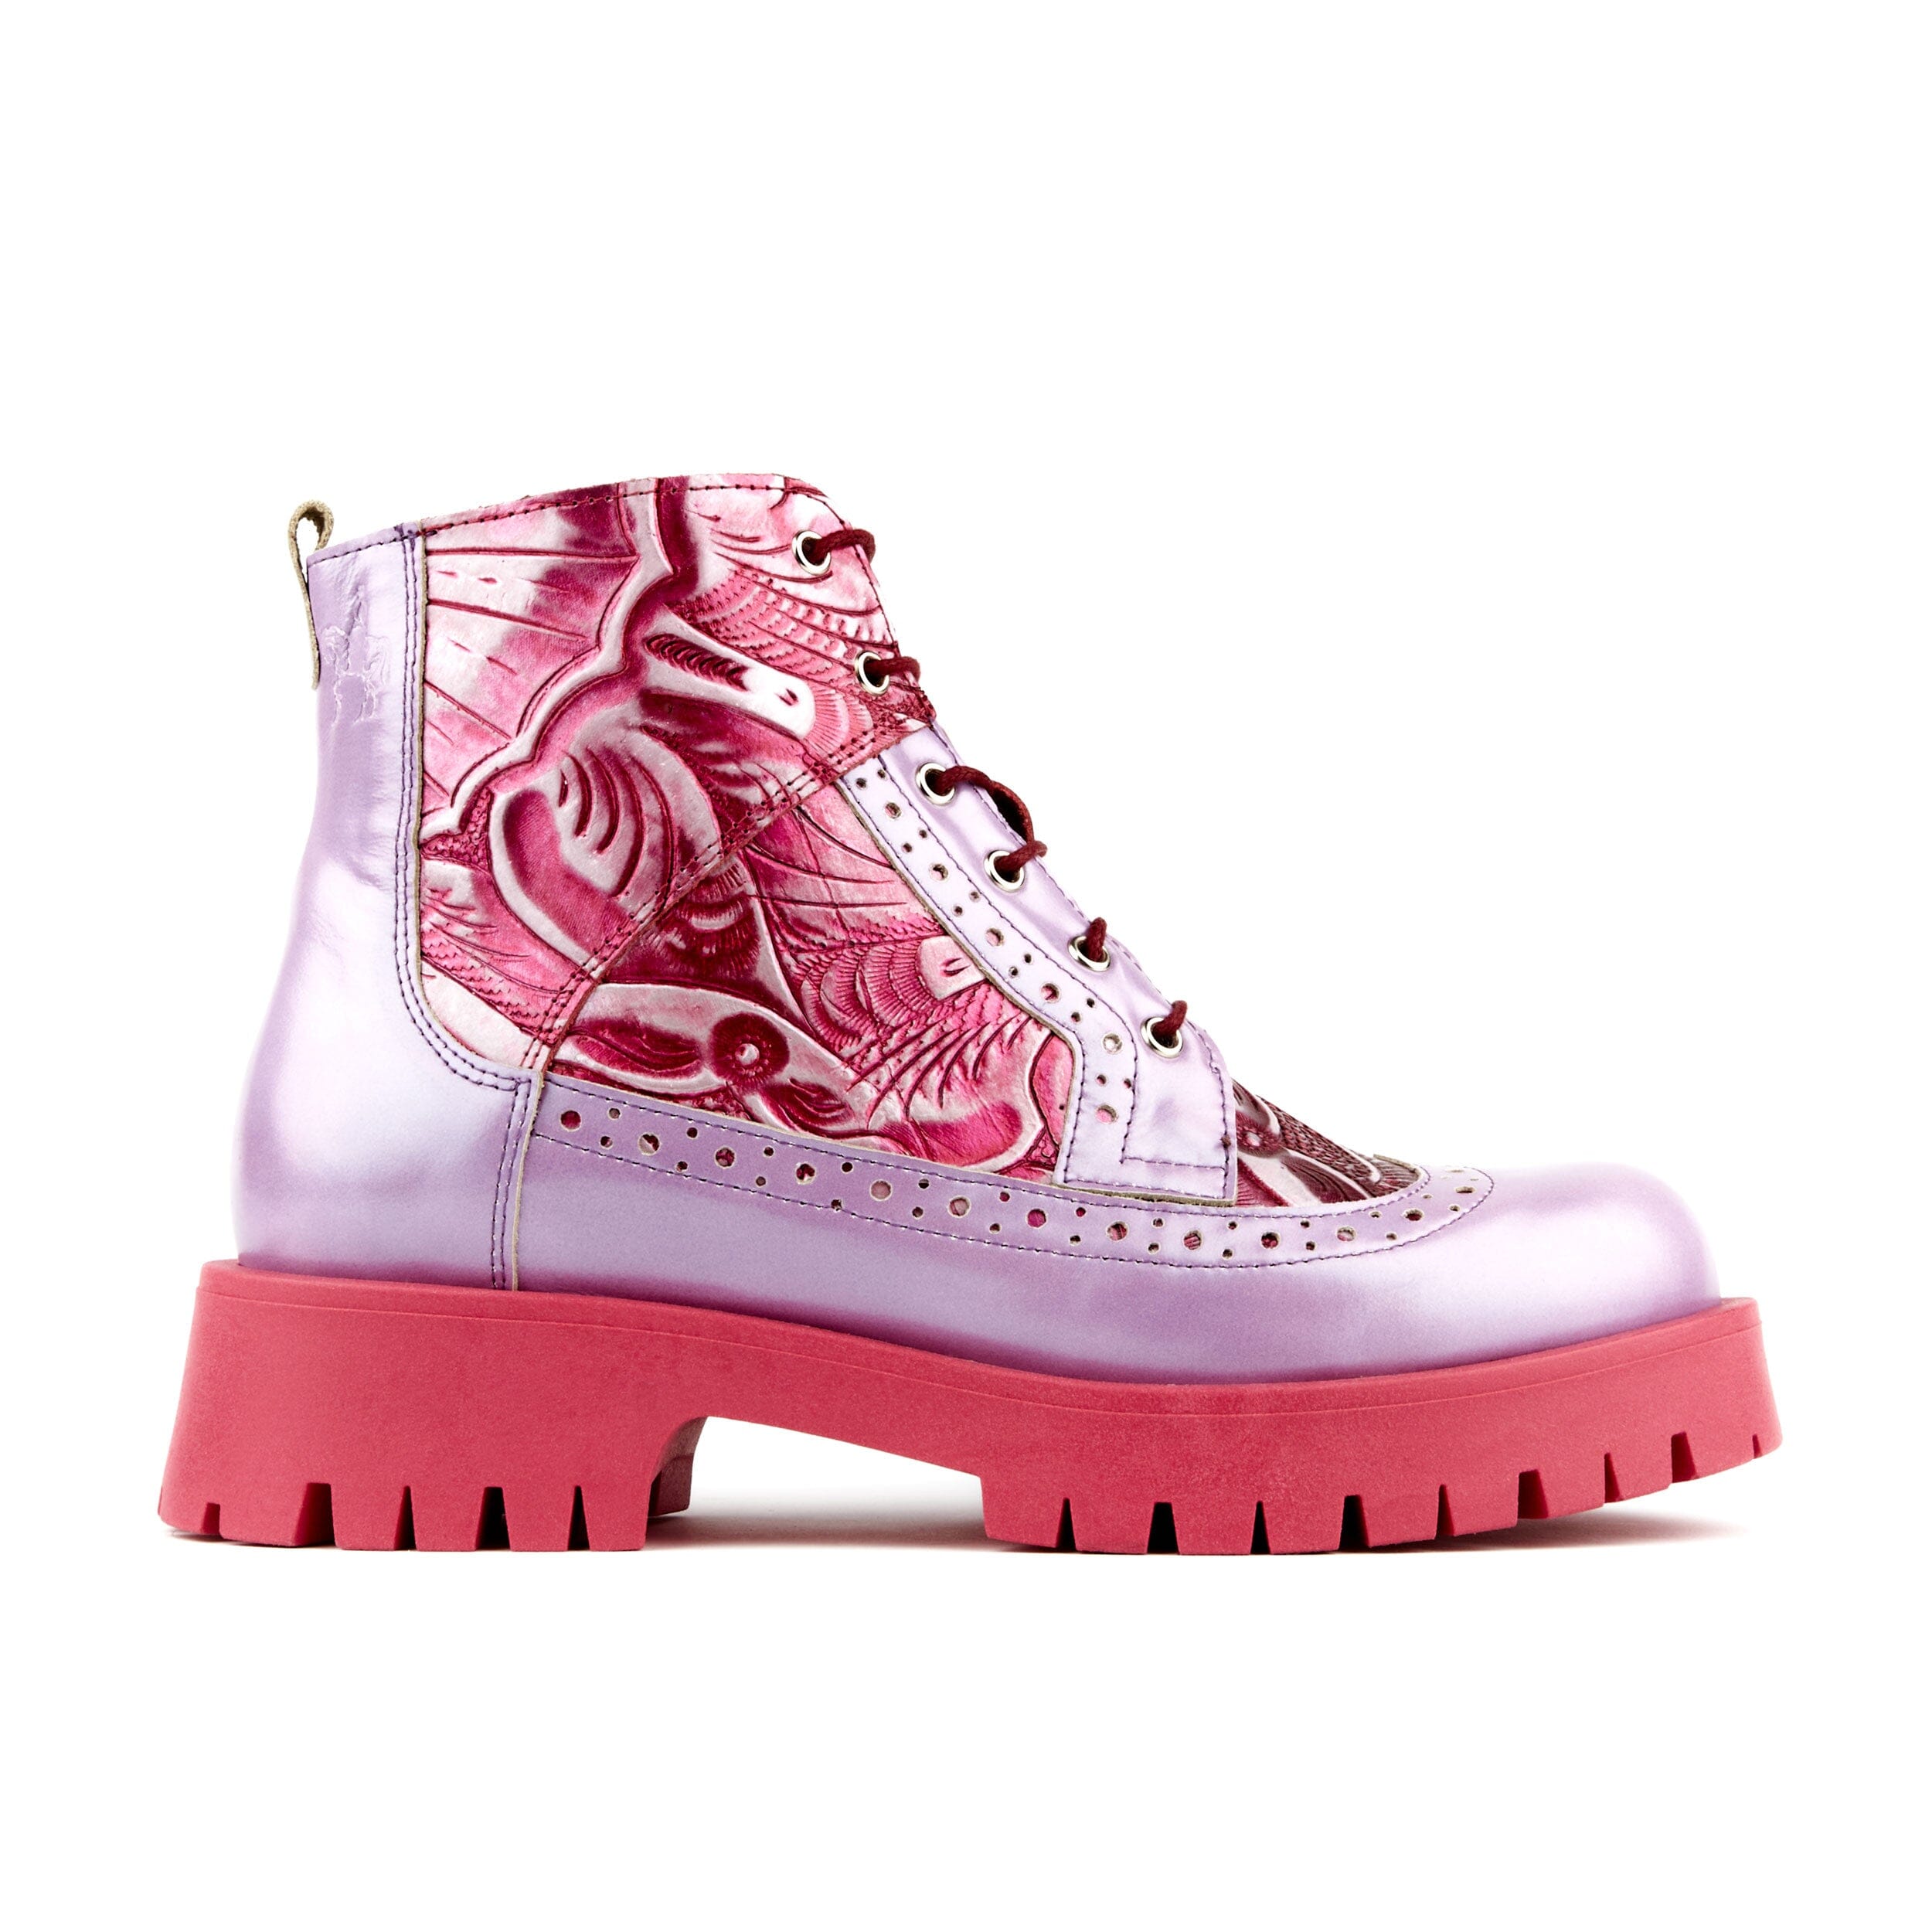 Cape Robbin Purple Lug-Sole Hi-Top Sneaker Boot - Women